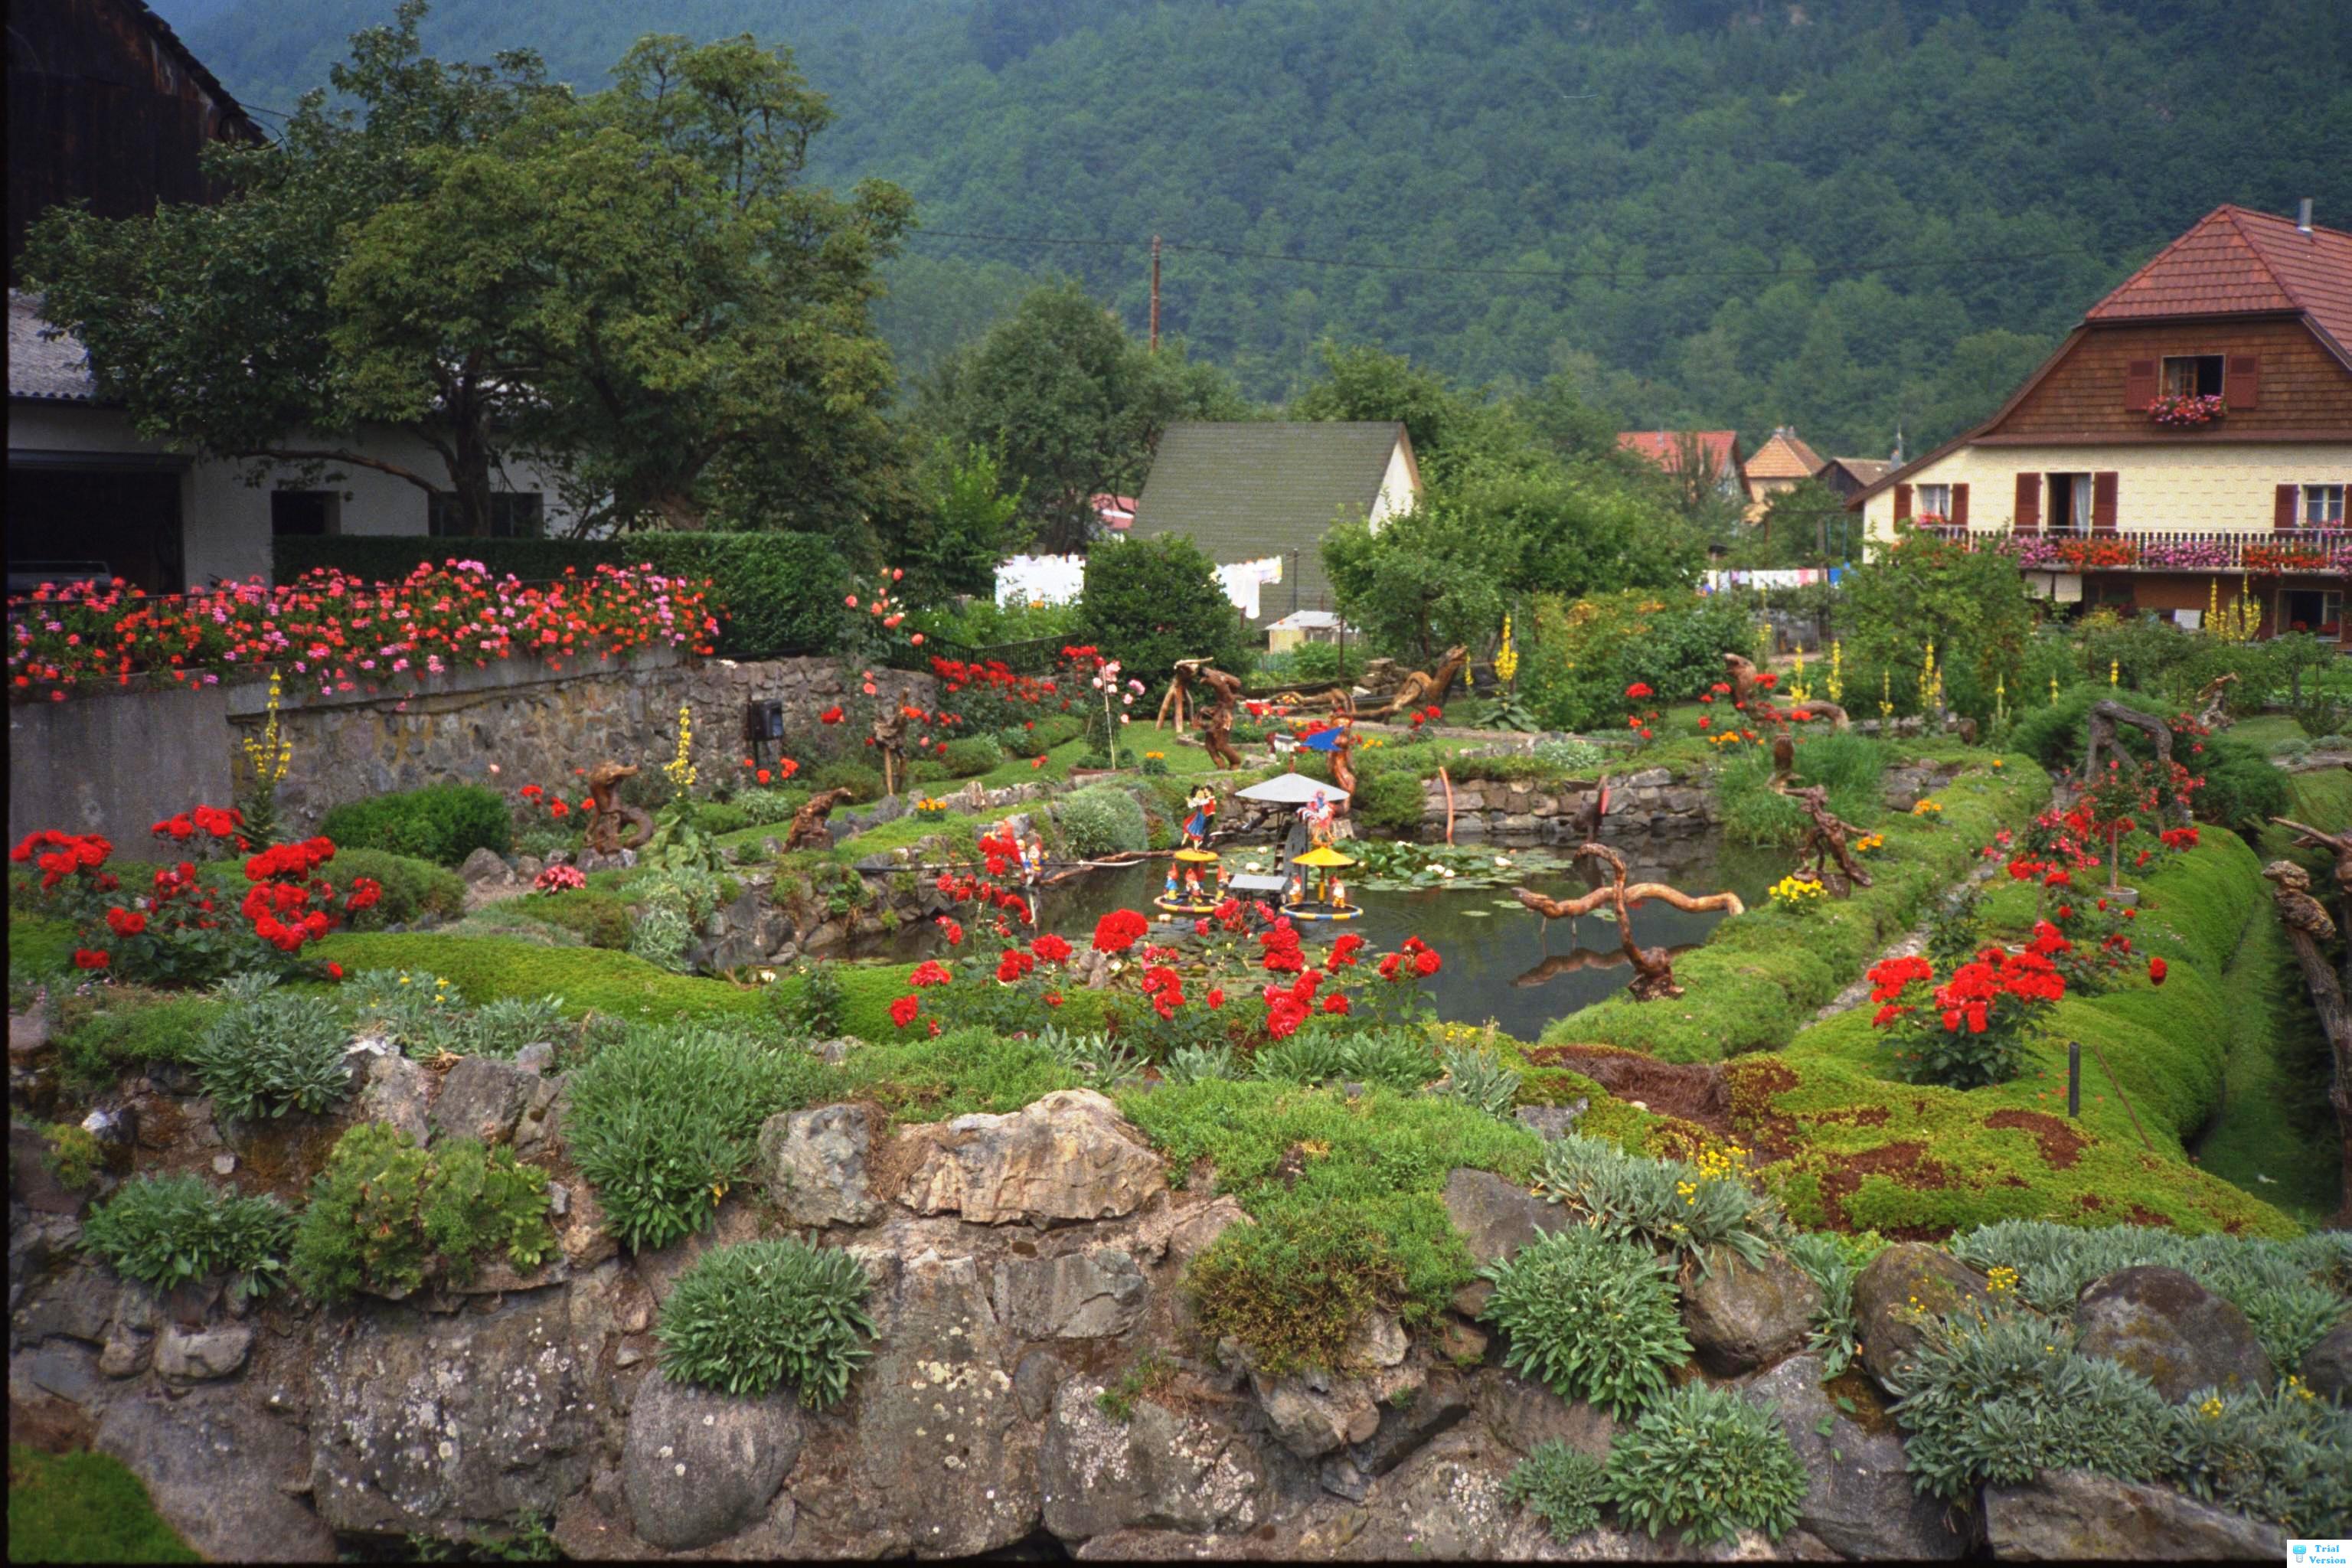 Serious Garden in Alsace